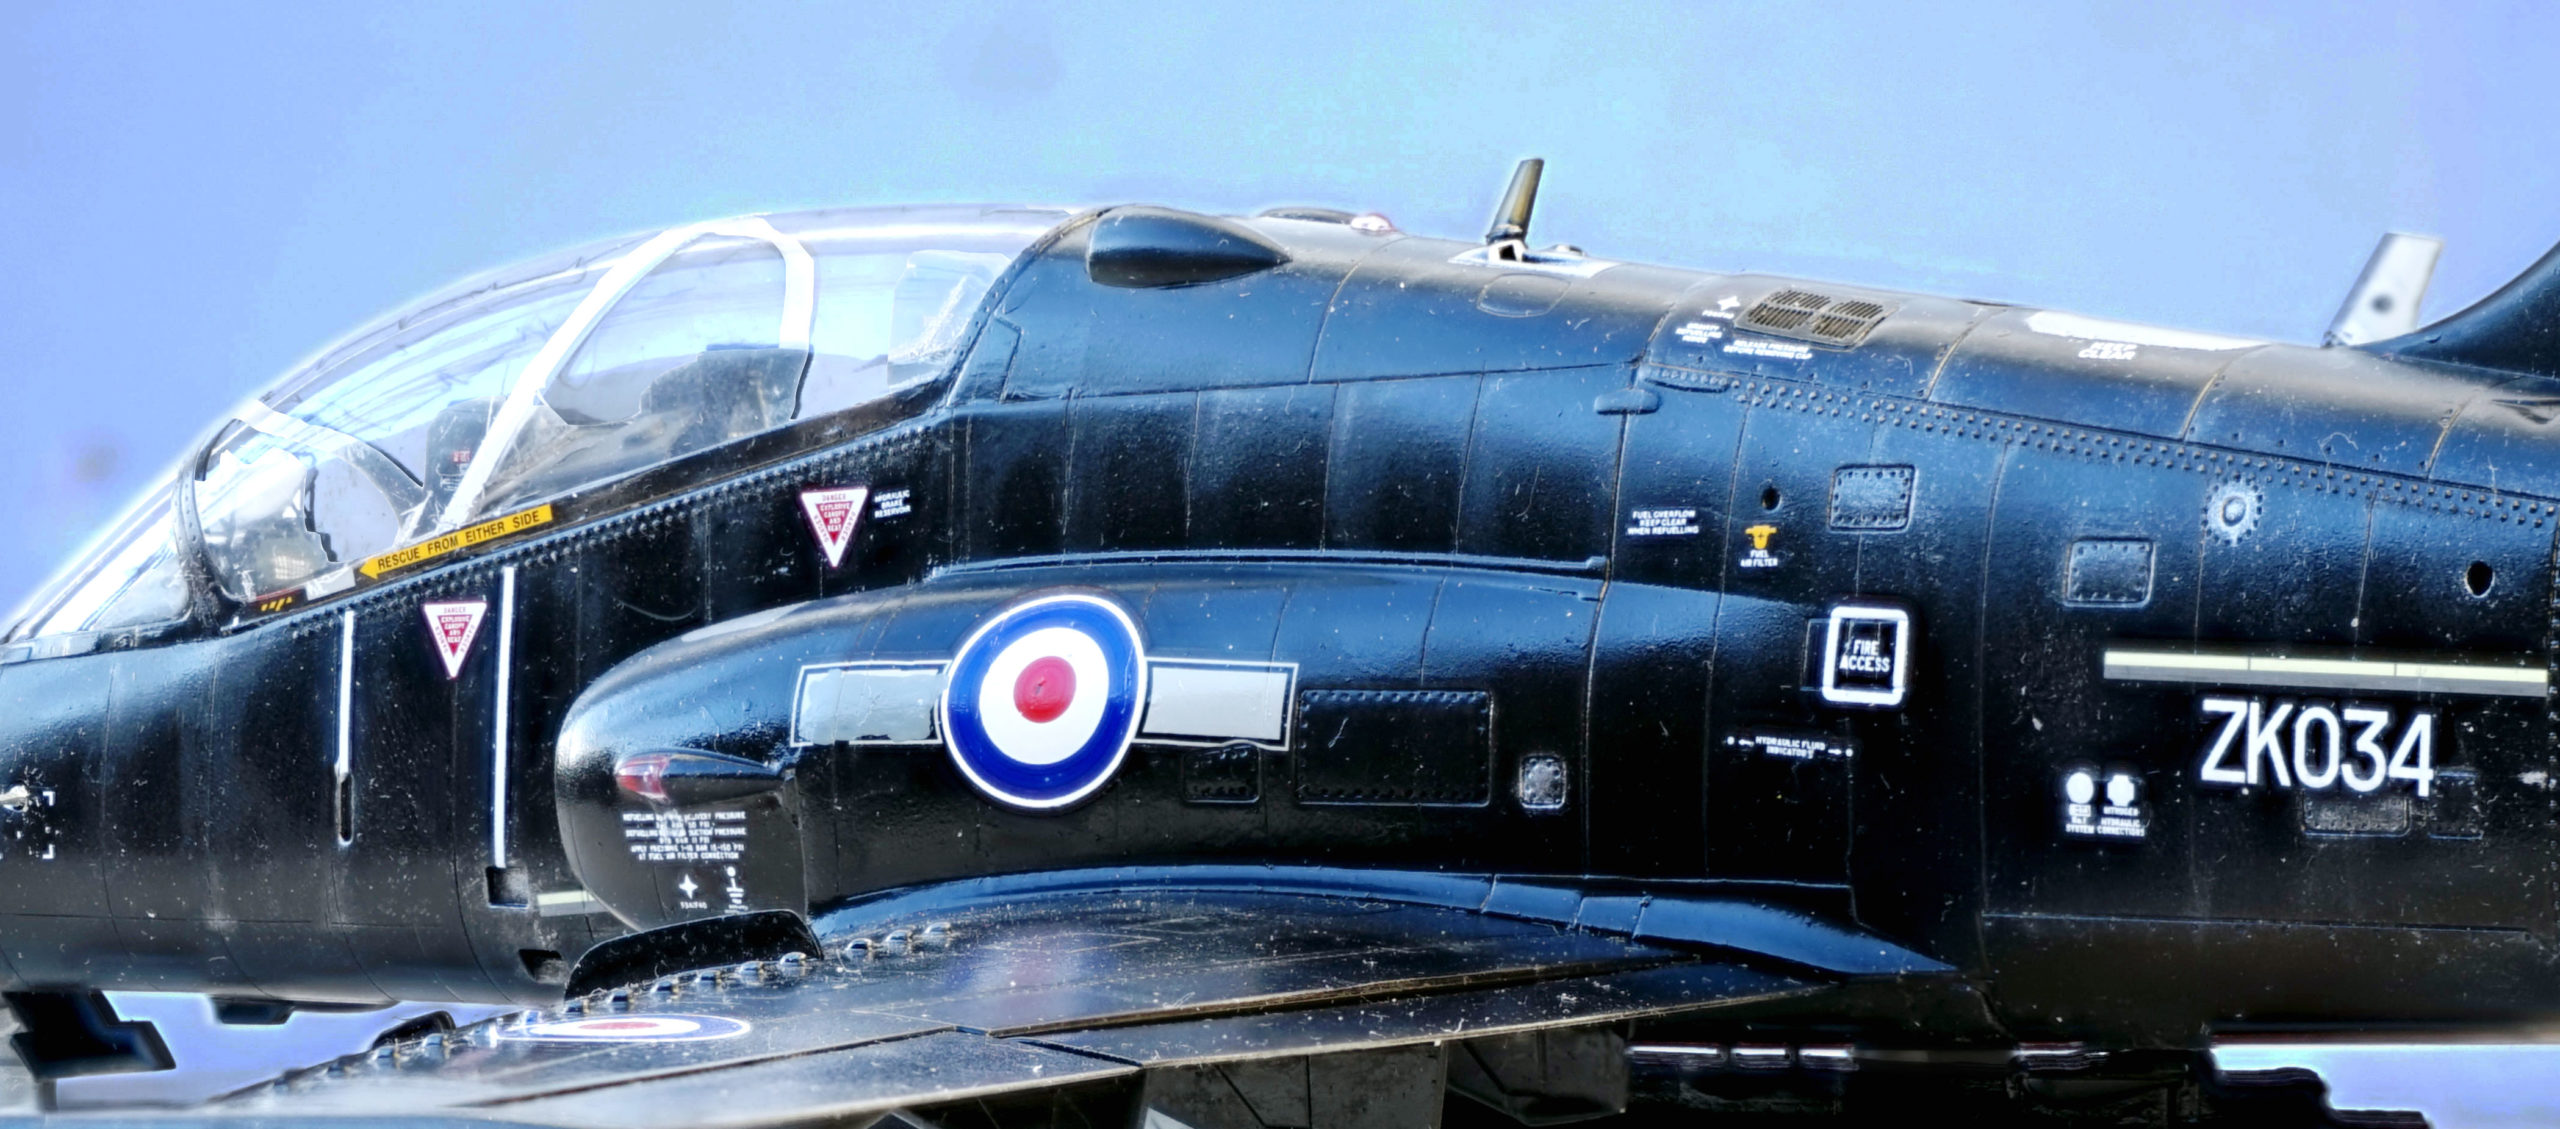 Black and Shining, BAe Hawk T2 Aircraft 1/32